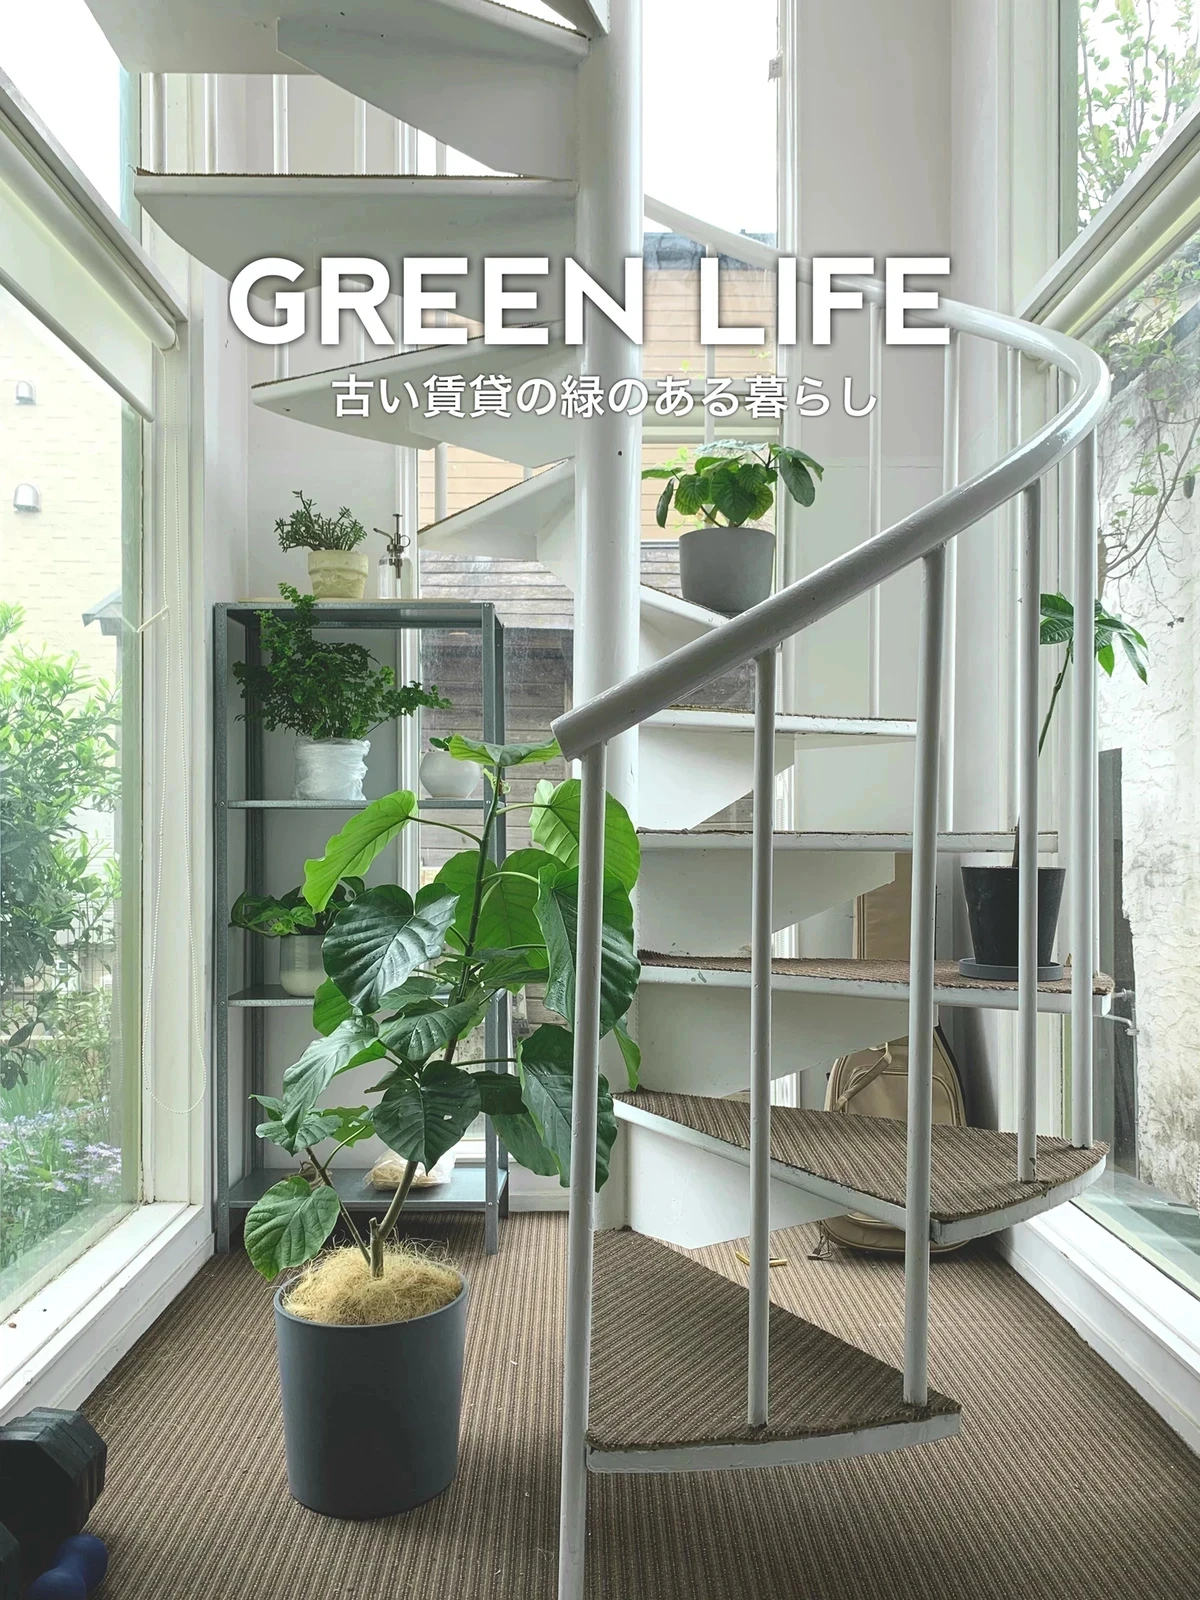 古い賃貸 緑のある暮らし 育てやすい植物 こぴroom カフェと暮らしが投稿したフォトブック Lemon8